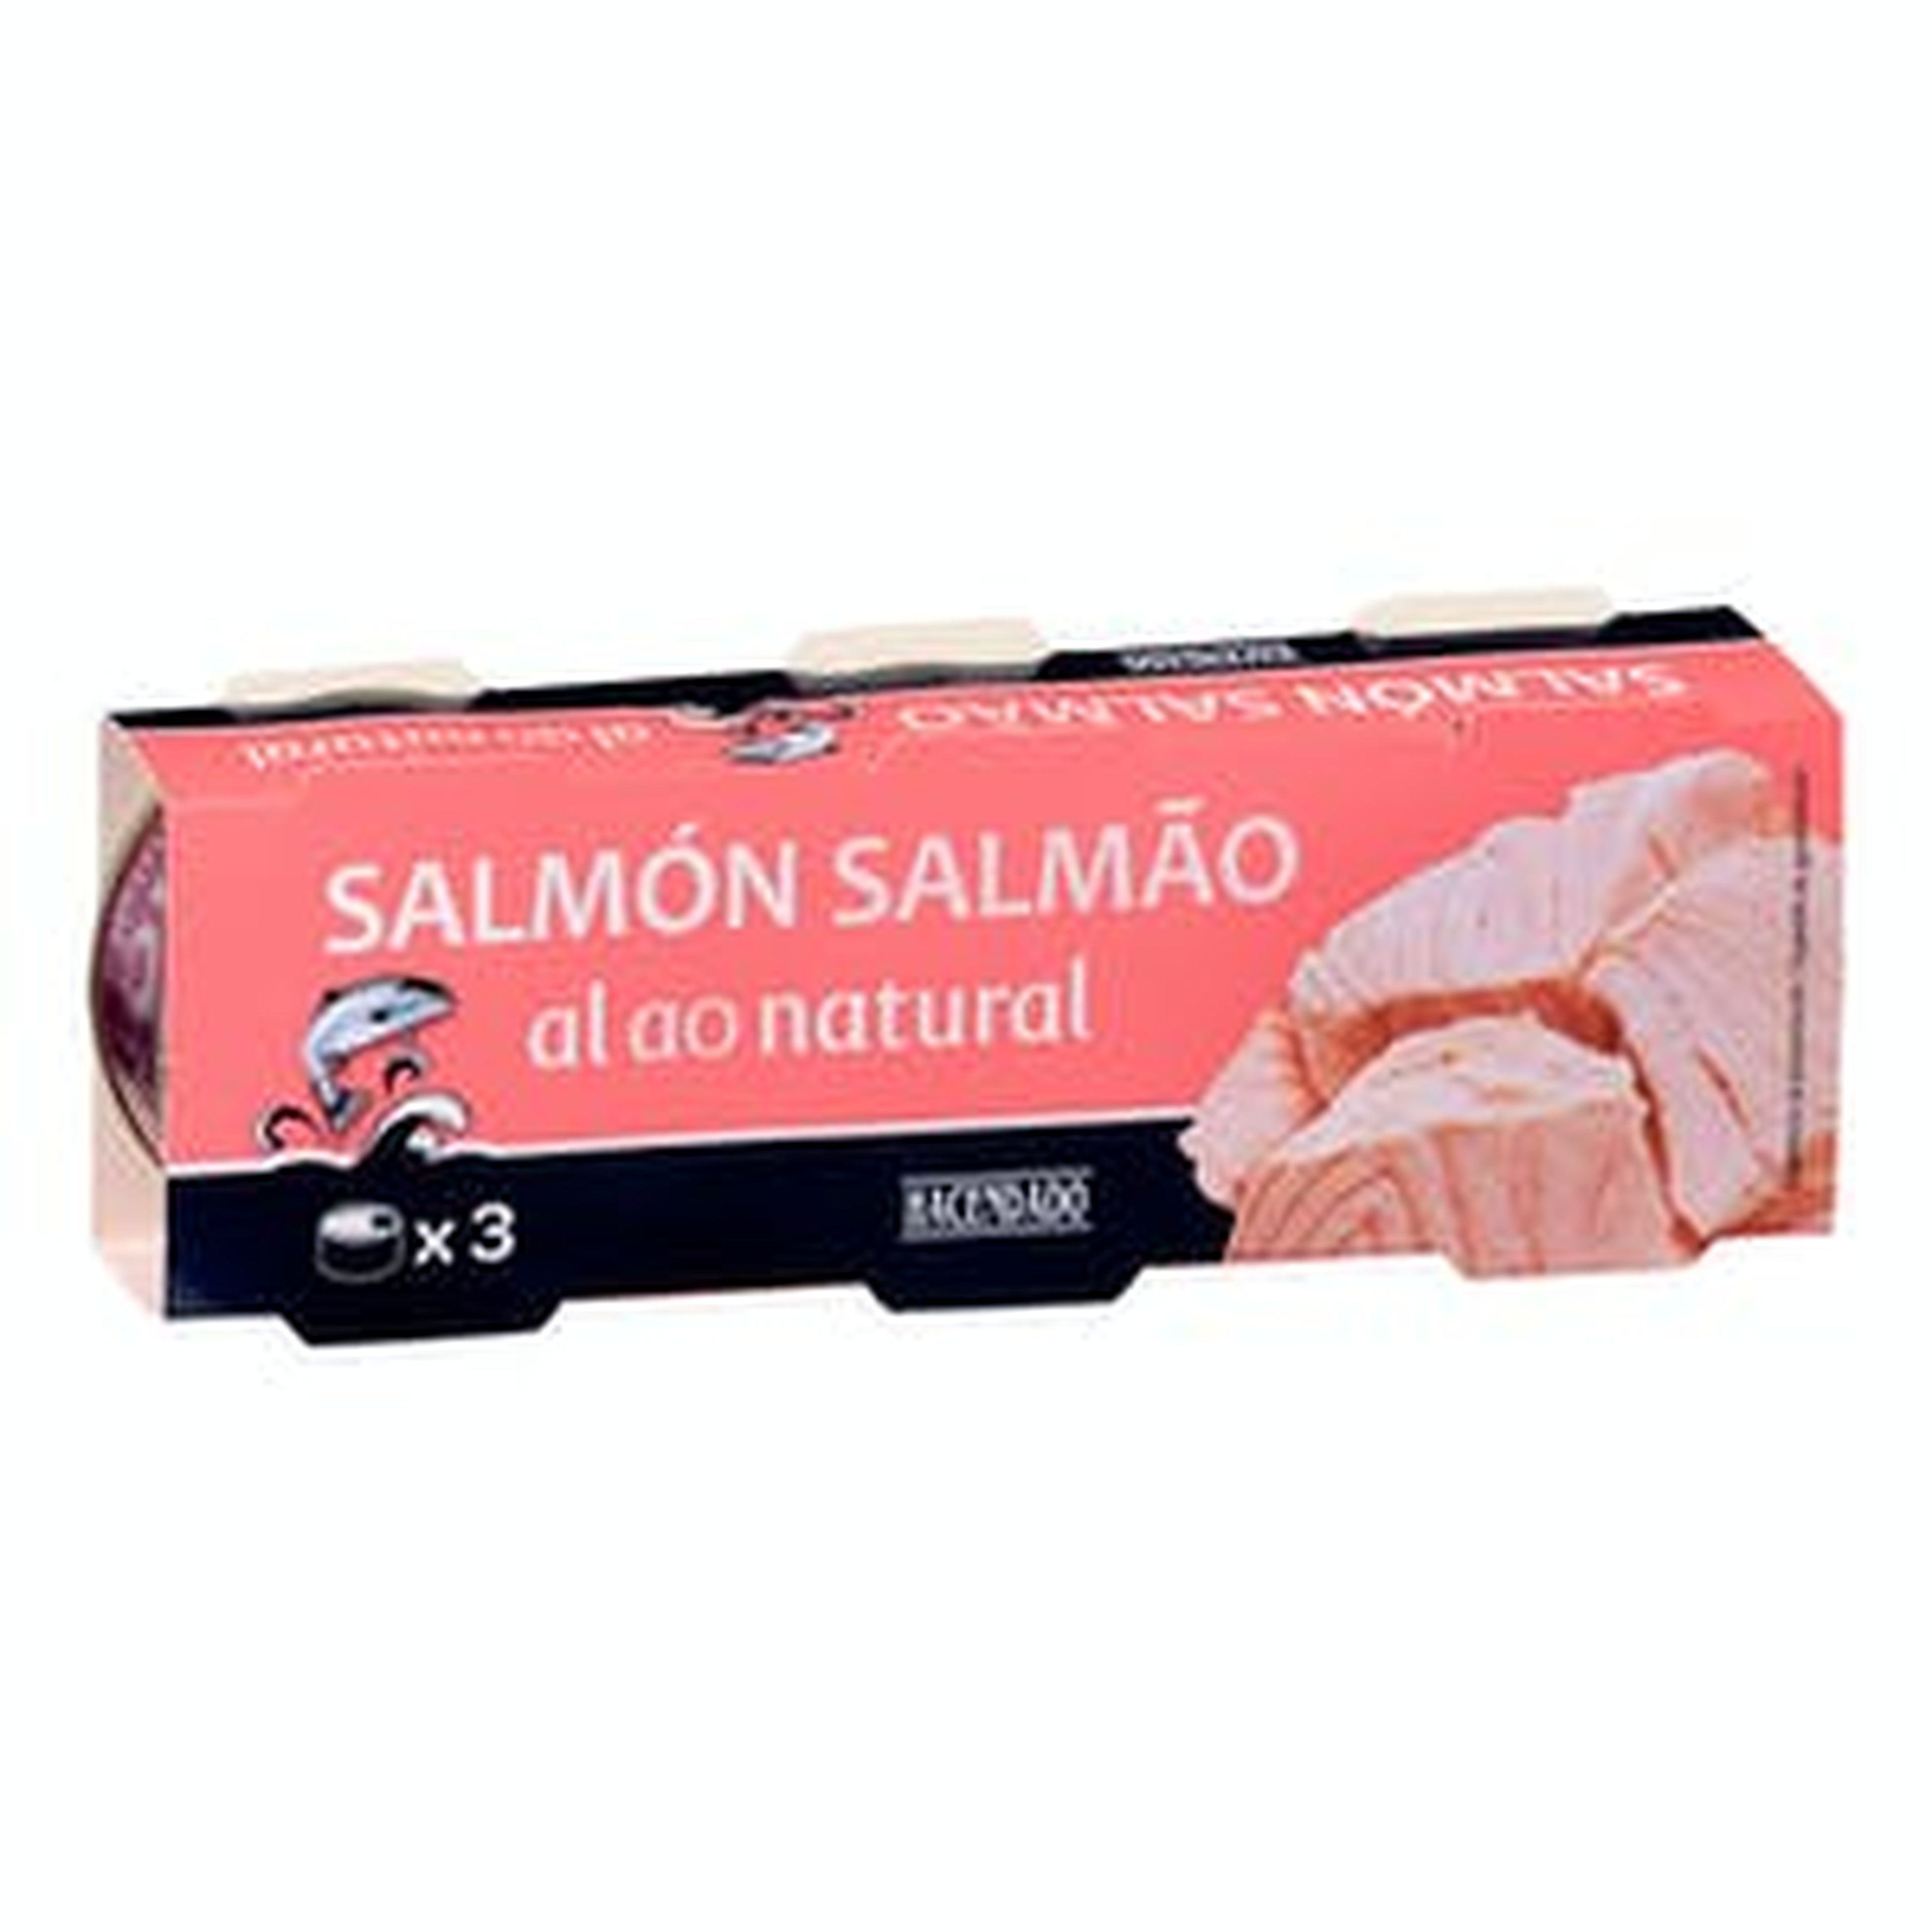 Latas de salmón